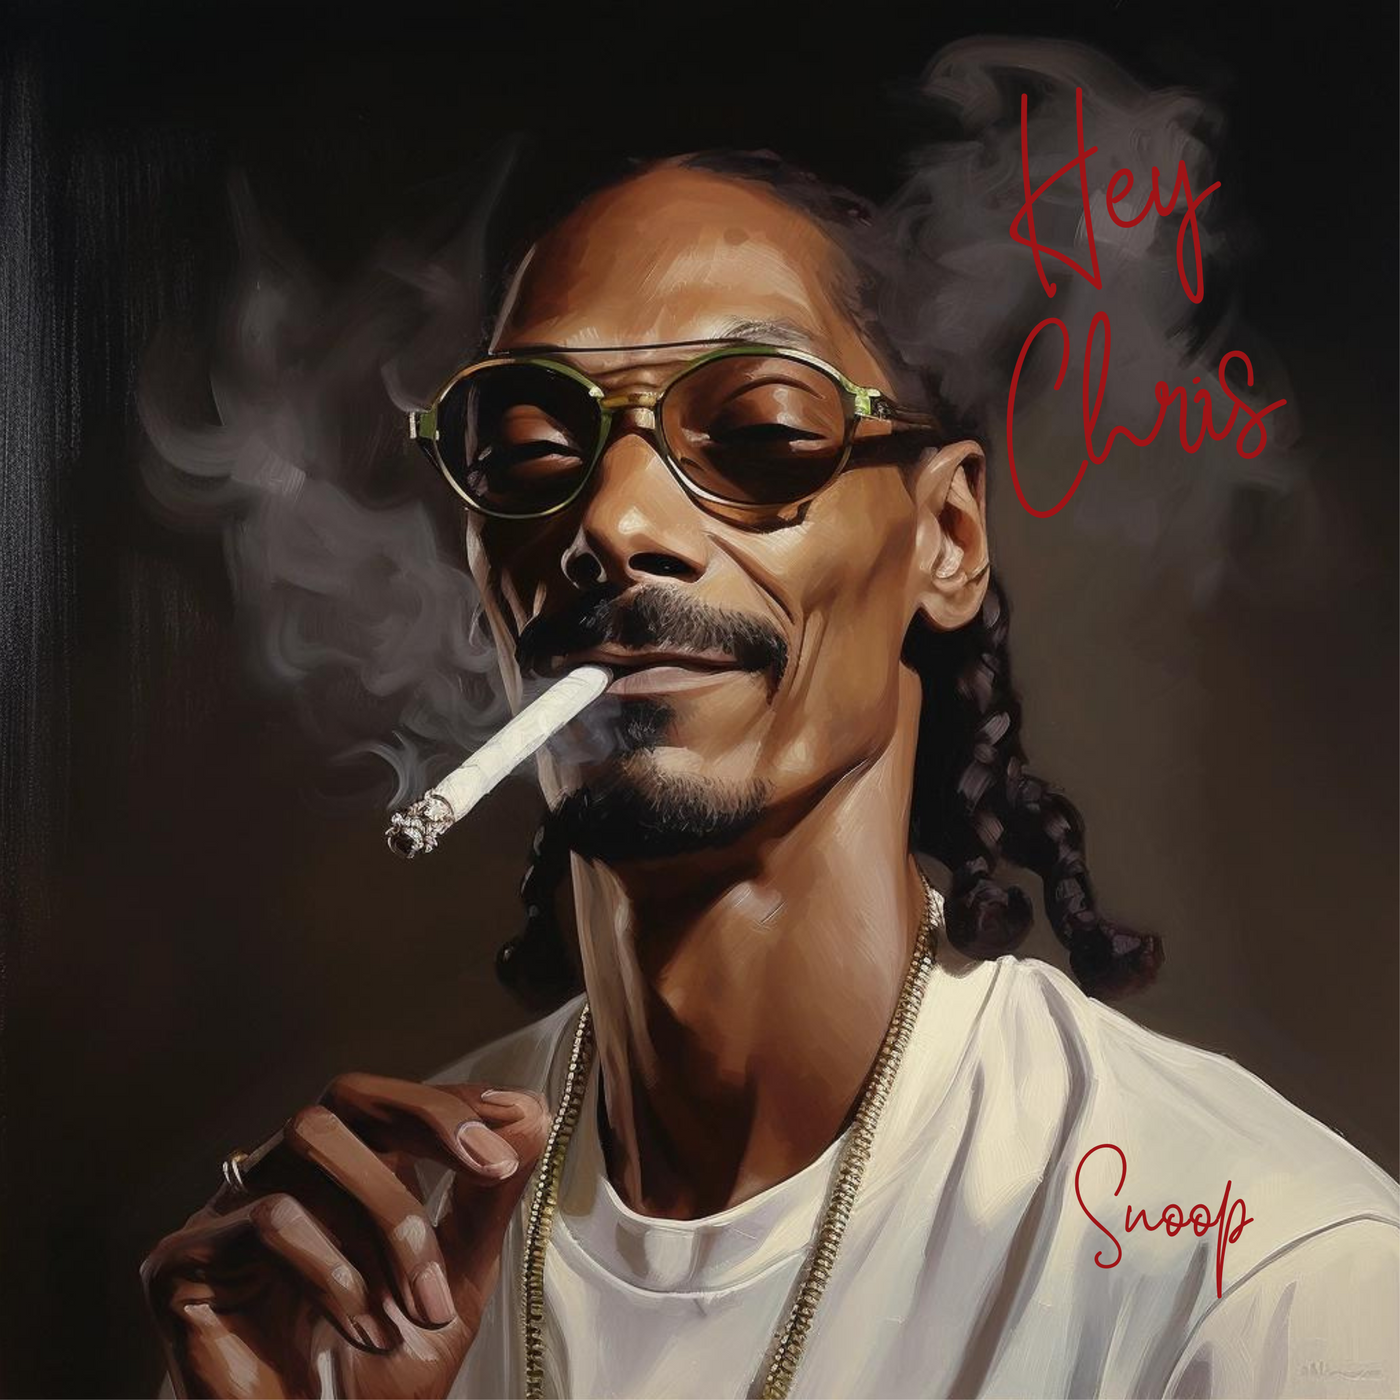 Navn/sætning på foto (Snoop Pup)